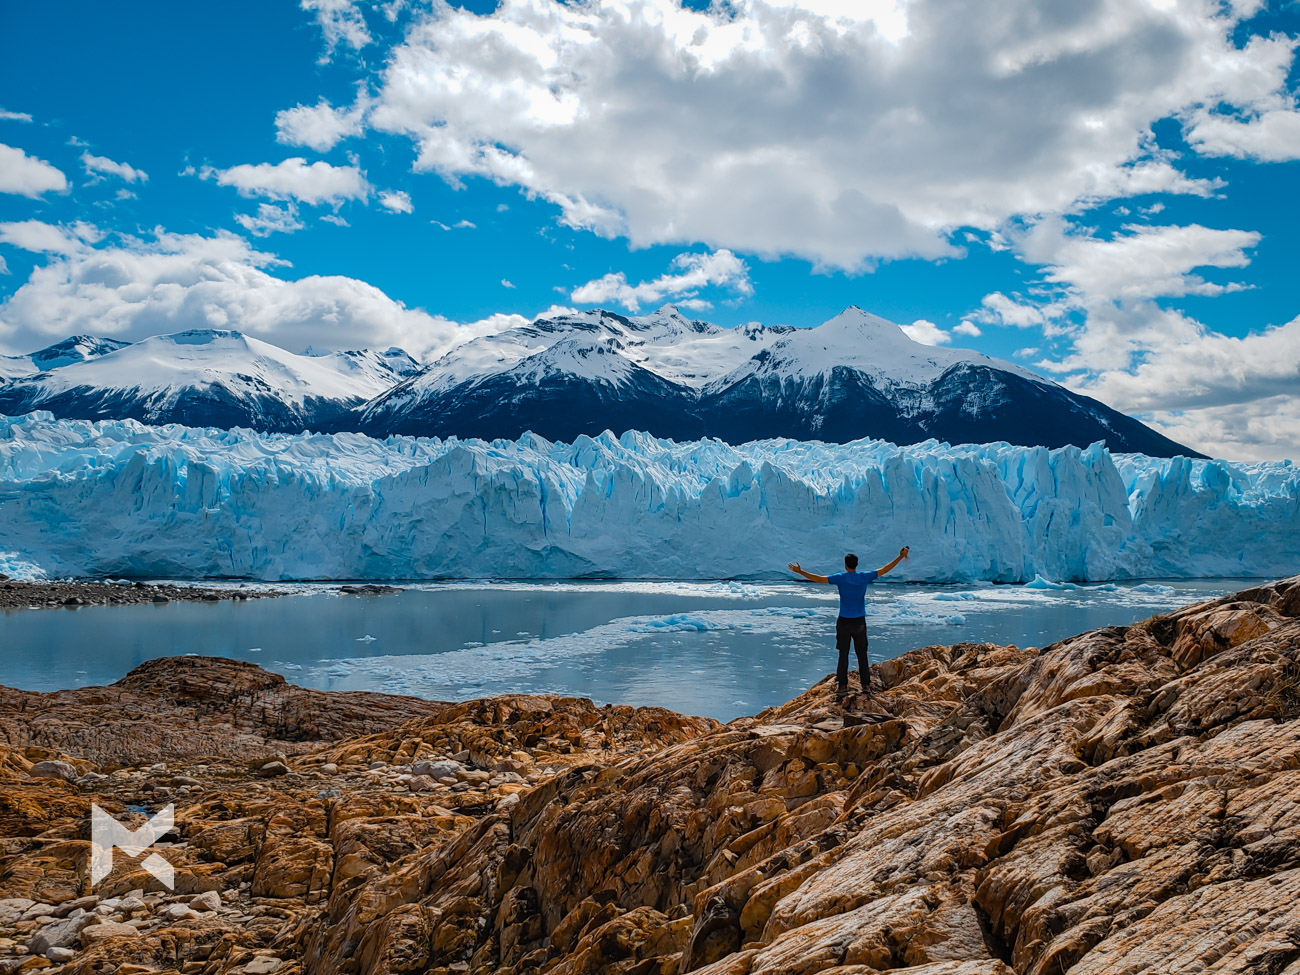 El Calafate: Excursão e cruzeiro de trekking na geleira Perito